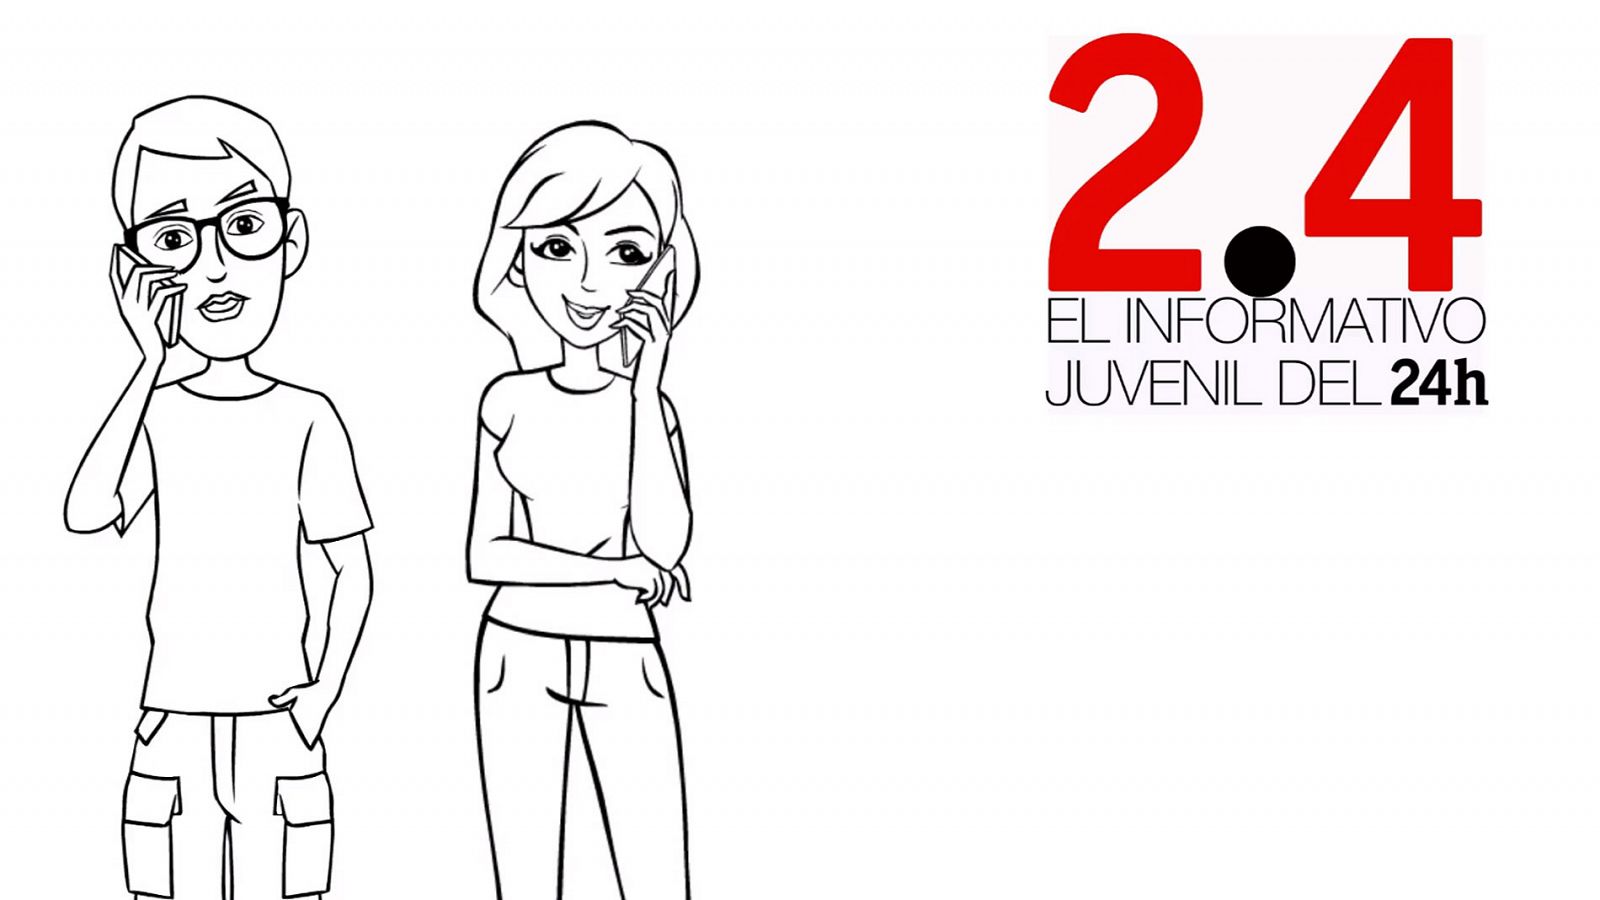 24 Horas estrena '2.4', el primer informativo juvenil de TVE